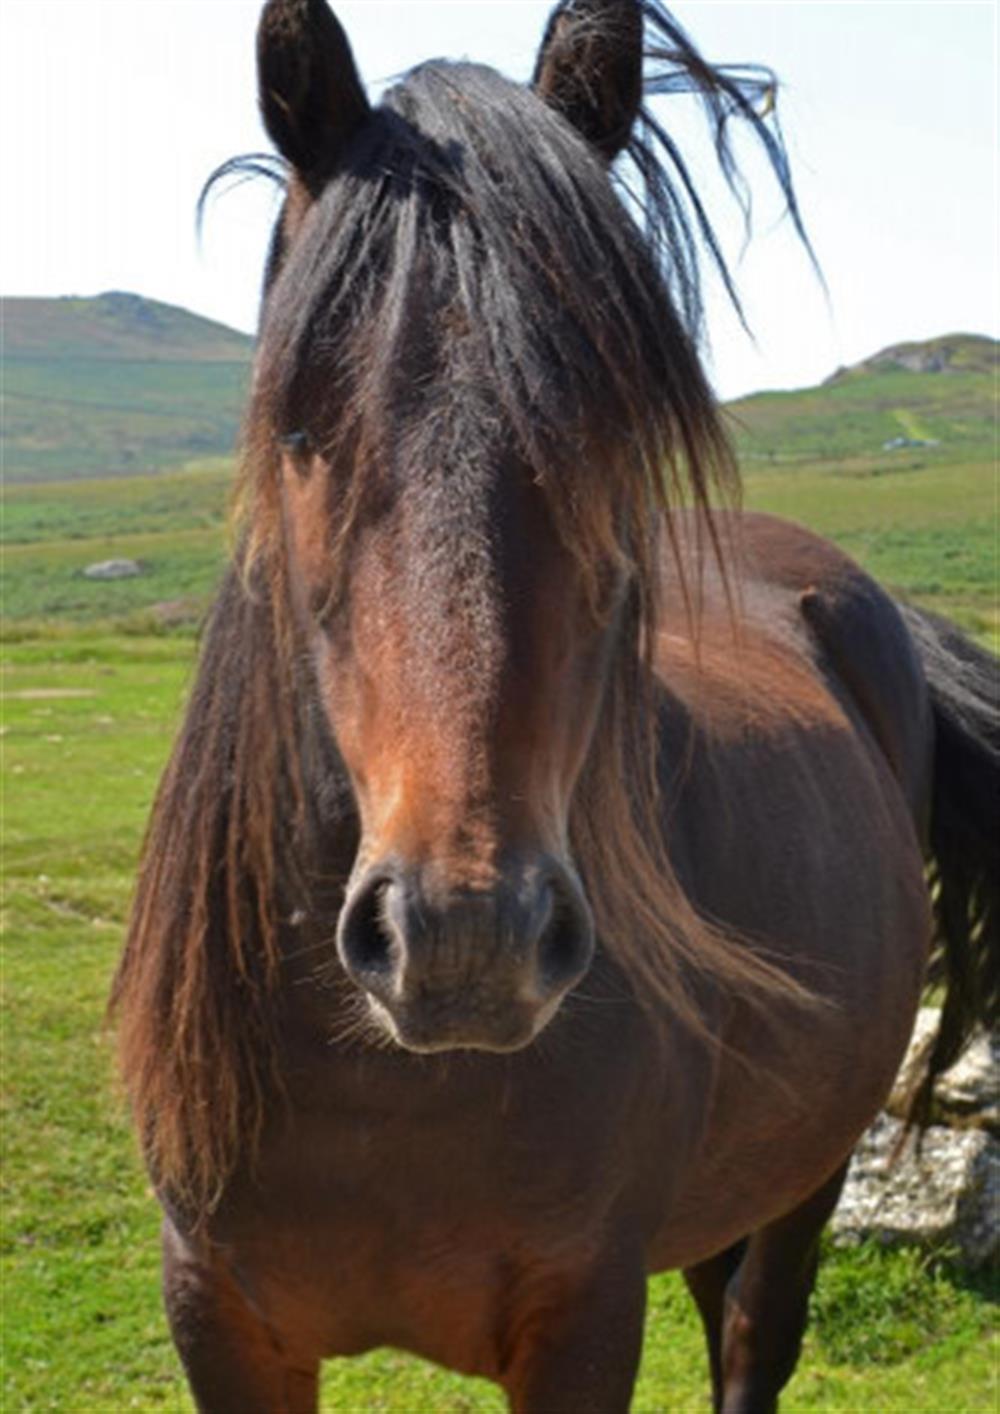 A Dartmoor pony.